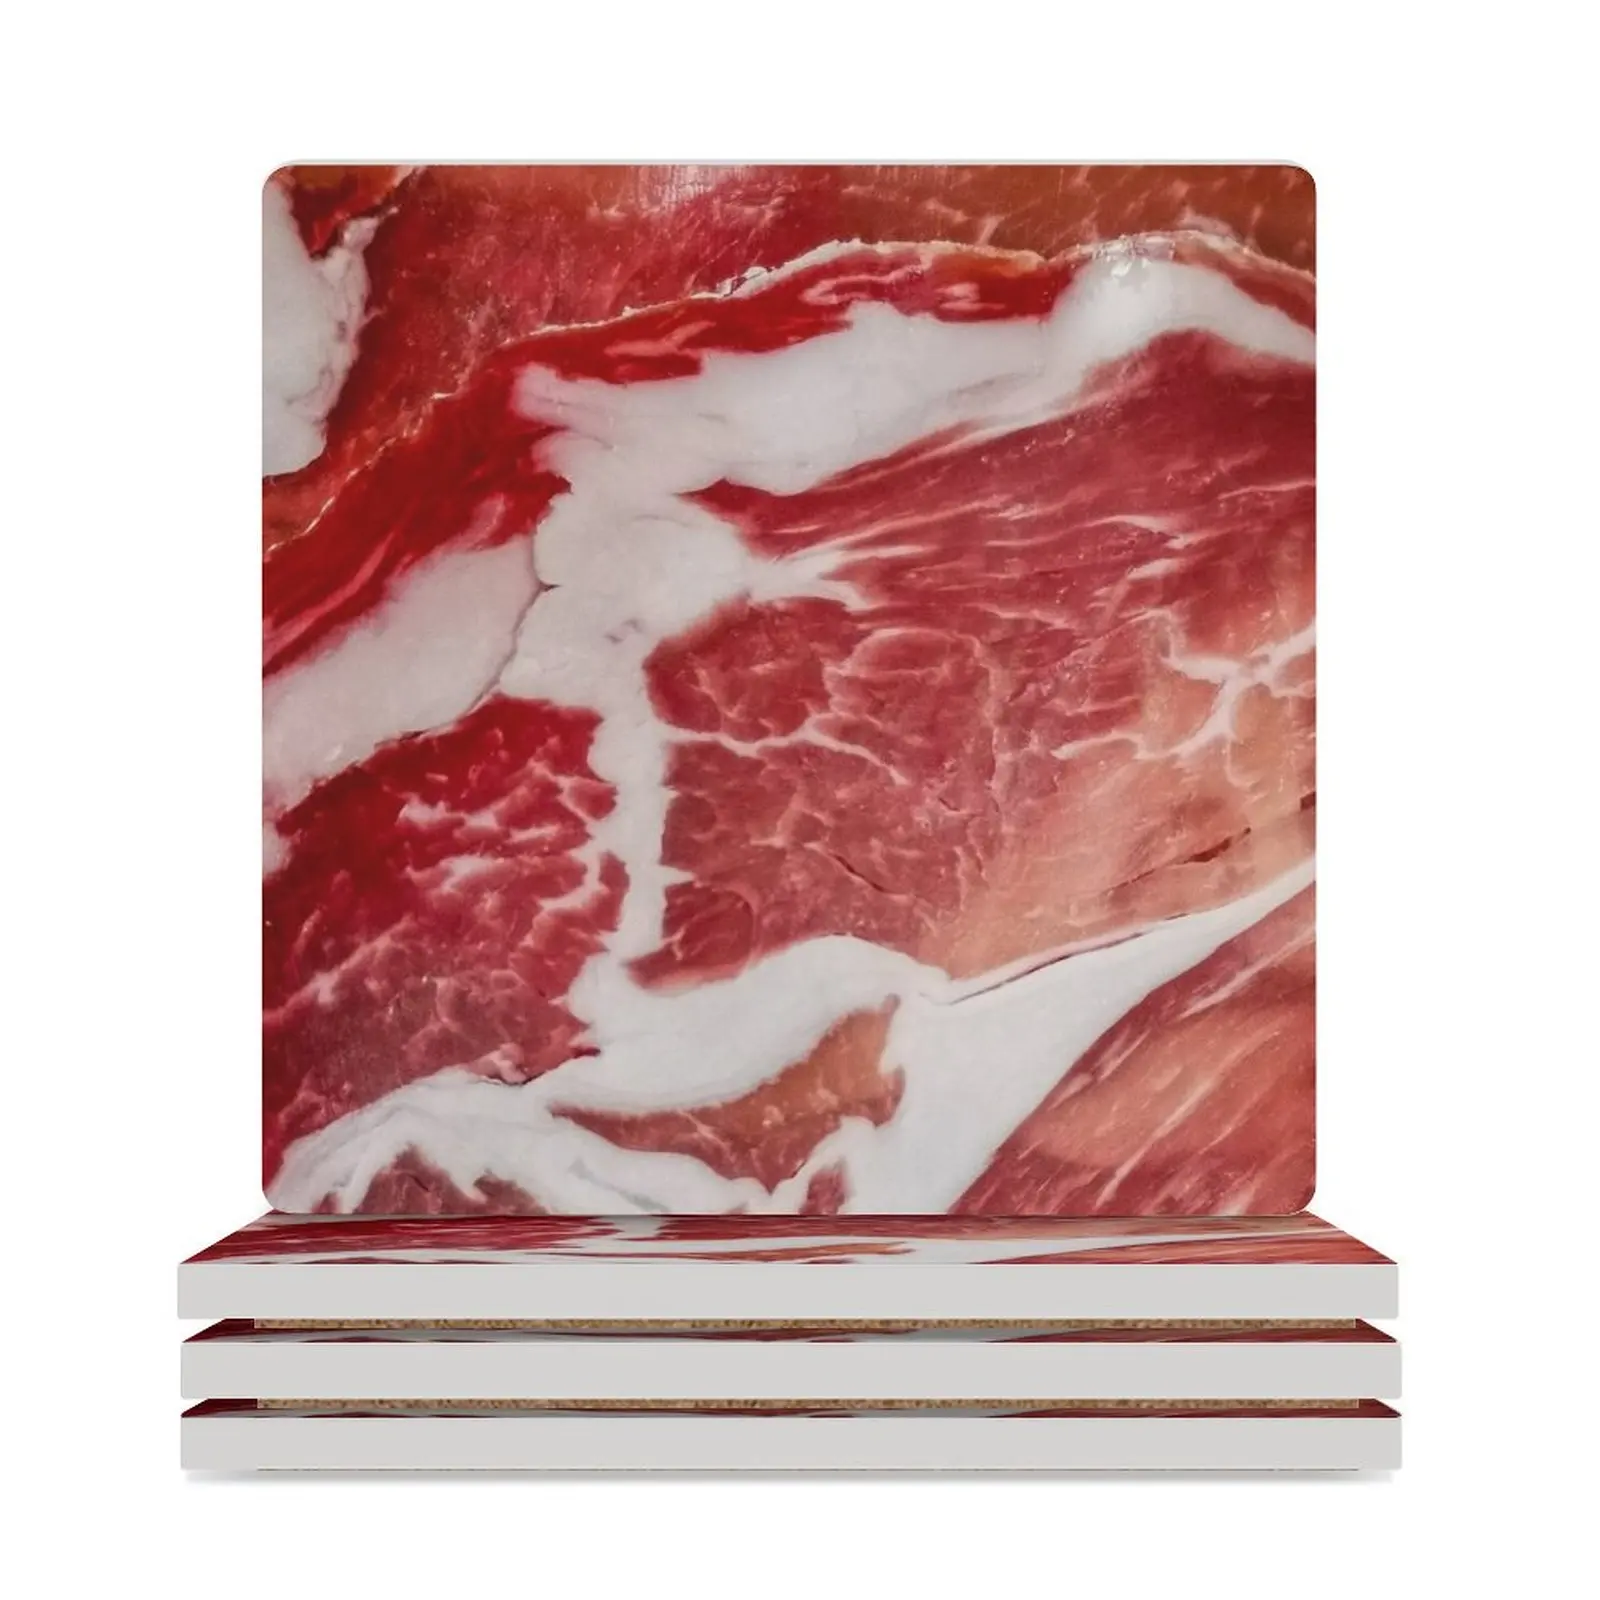 Керамические подставки с текстурой мяса крупным планом (квадратные) персонализируйте забавную плитку для керамических подставок